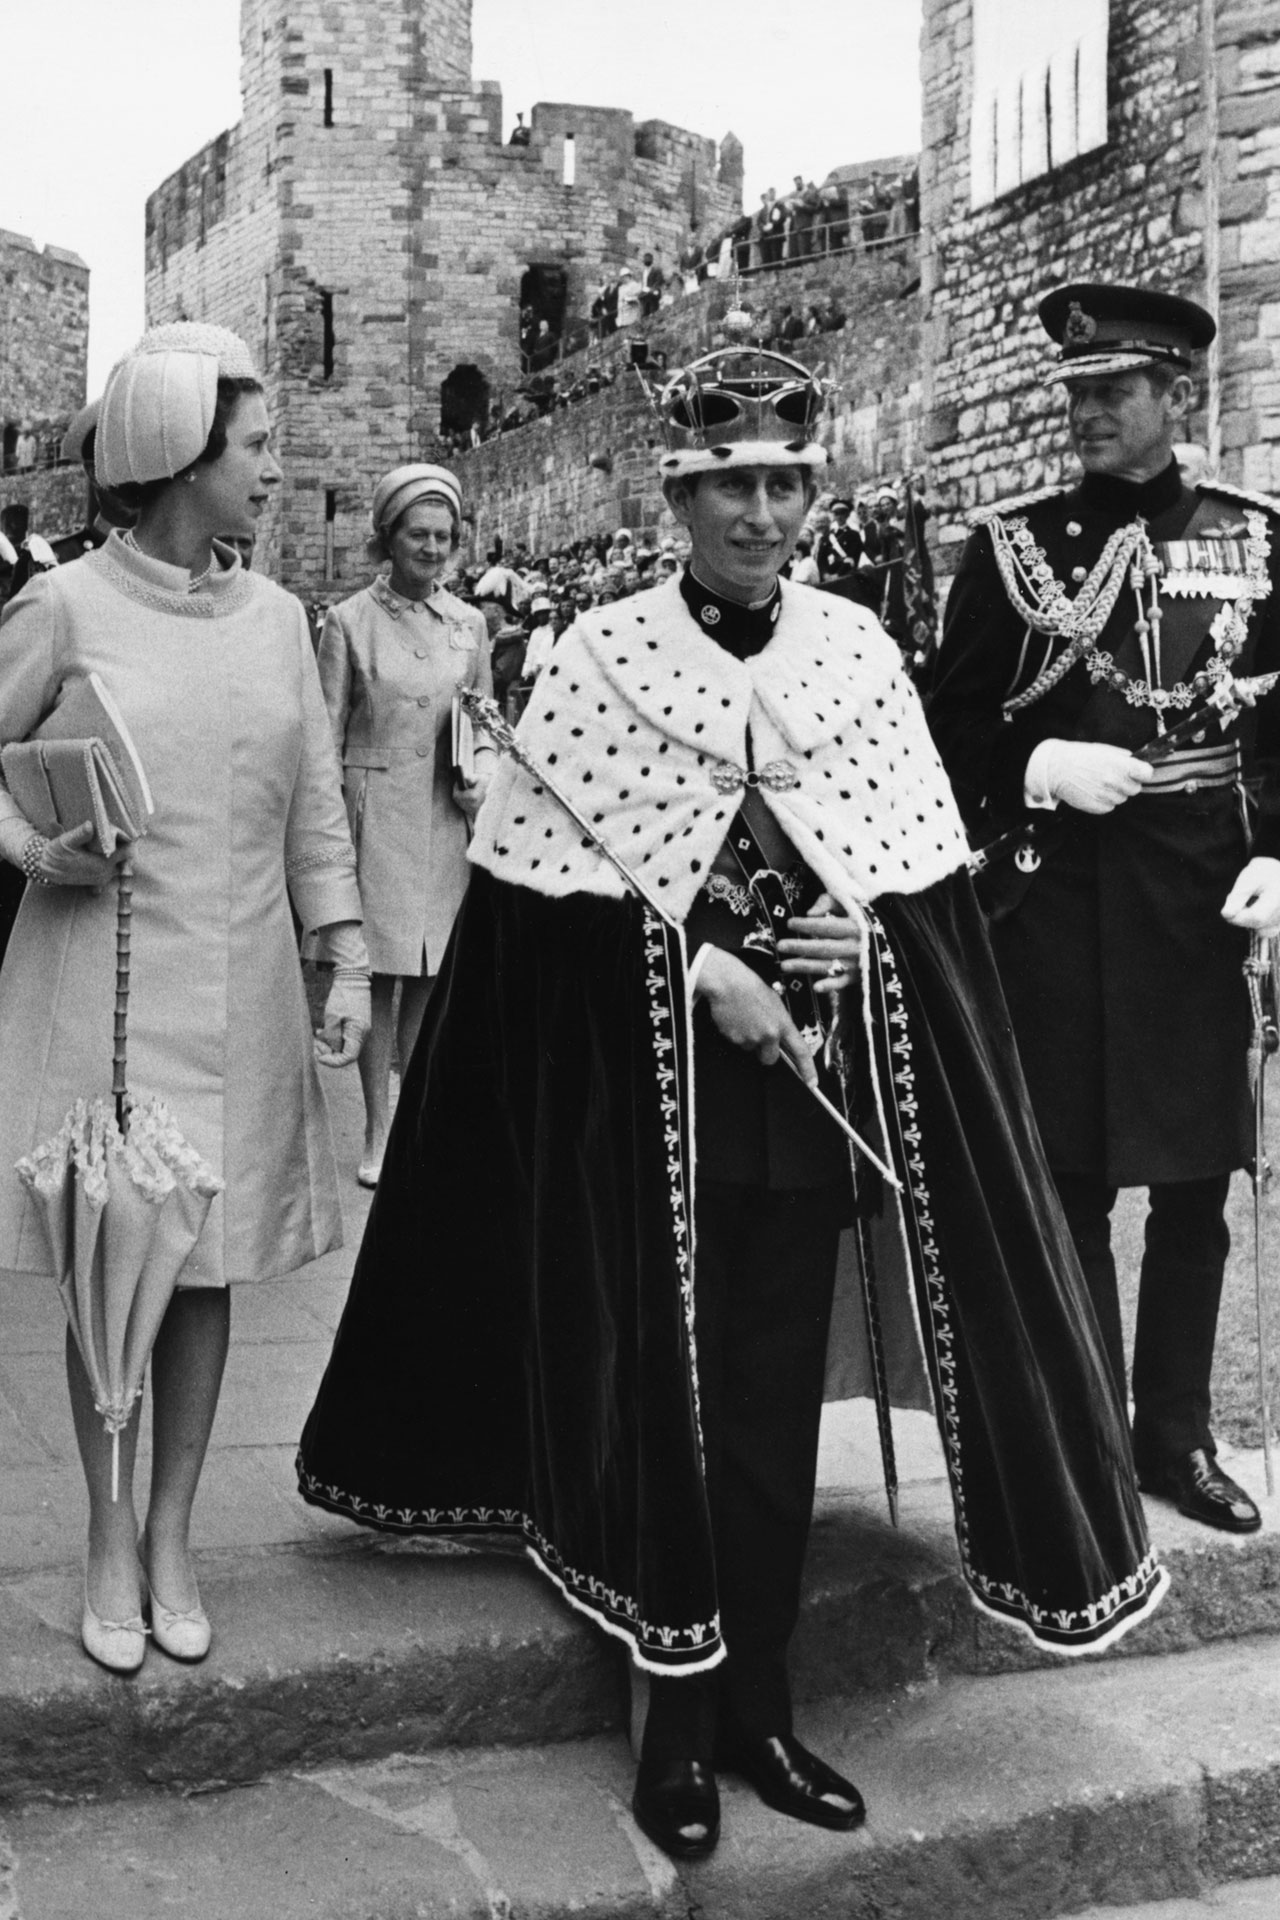 查尔斯王子 70 岁生日快乐!vogue带你看这位英国王储人生中的高光时刻